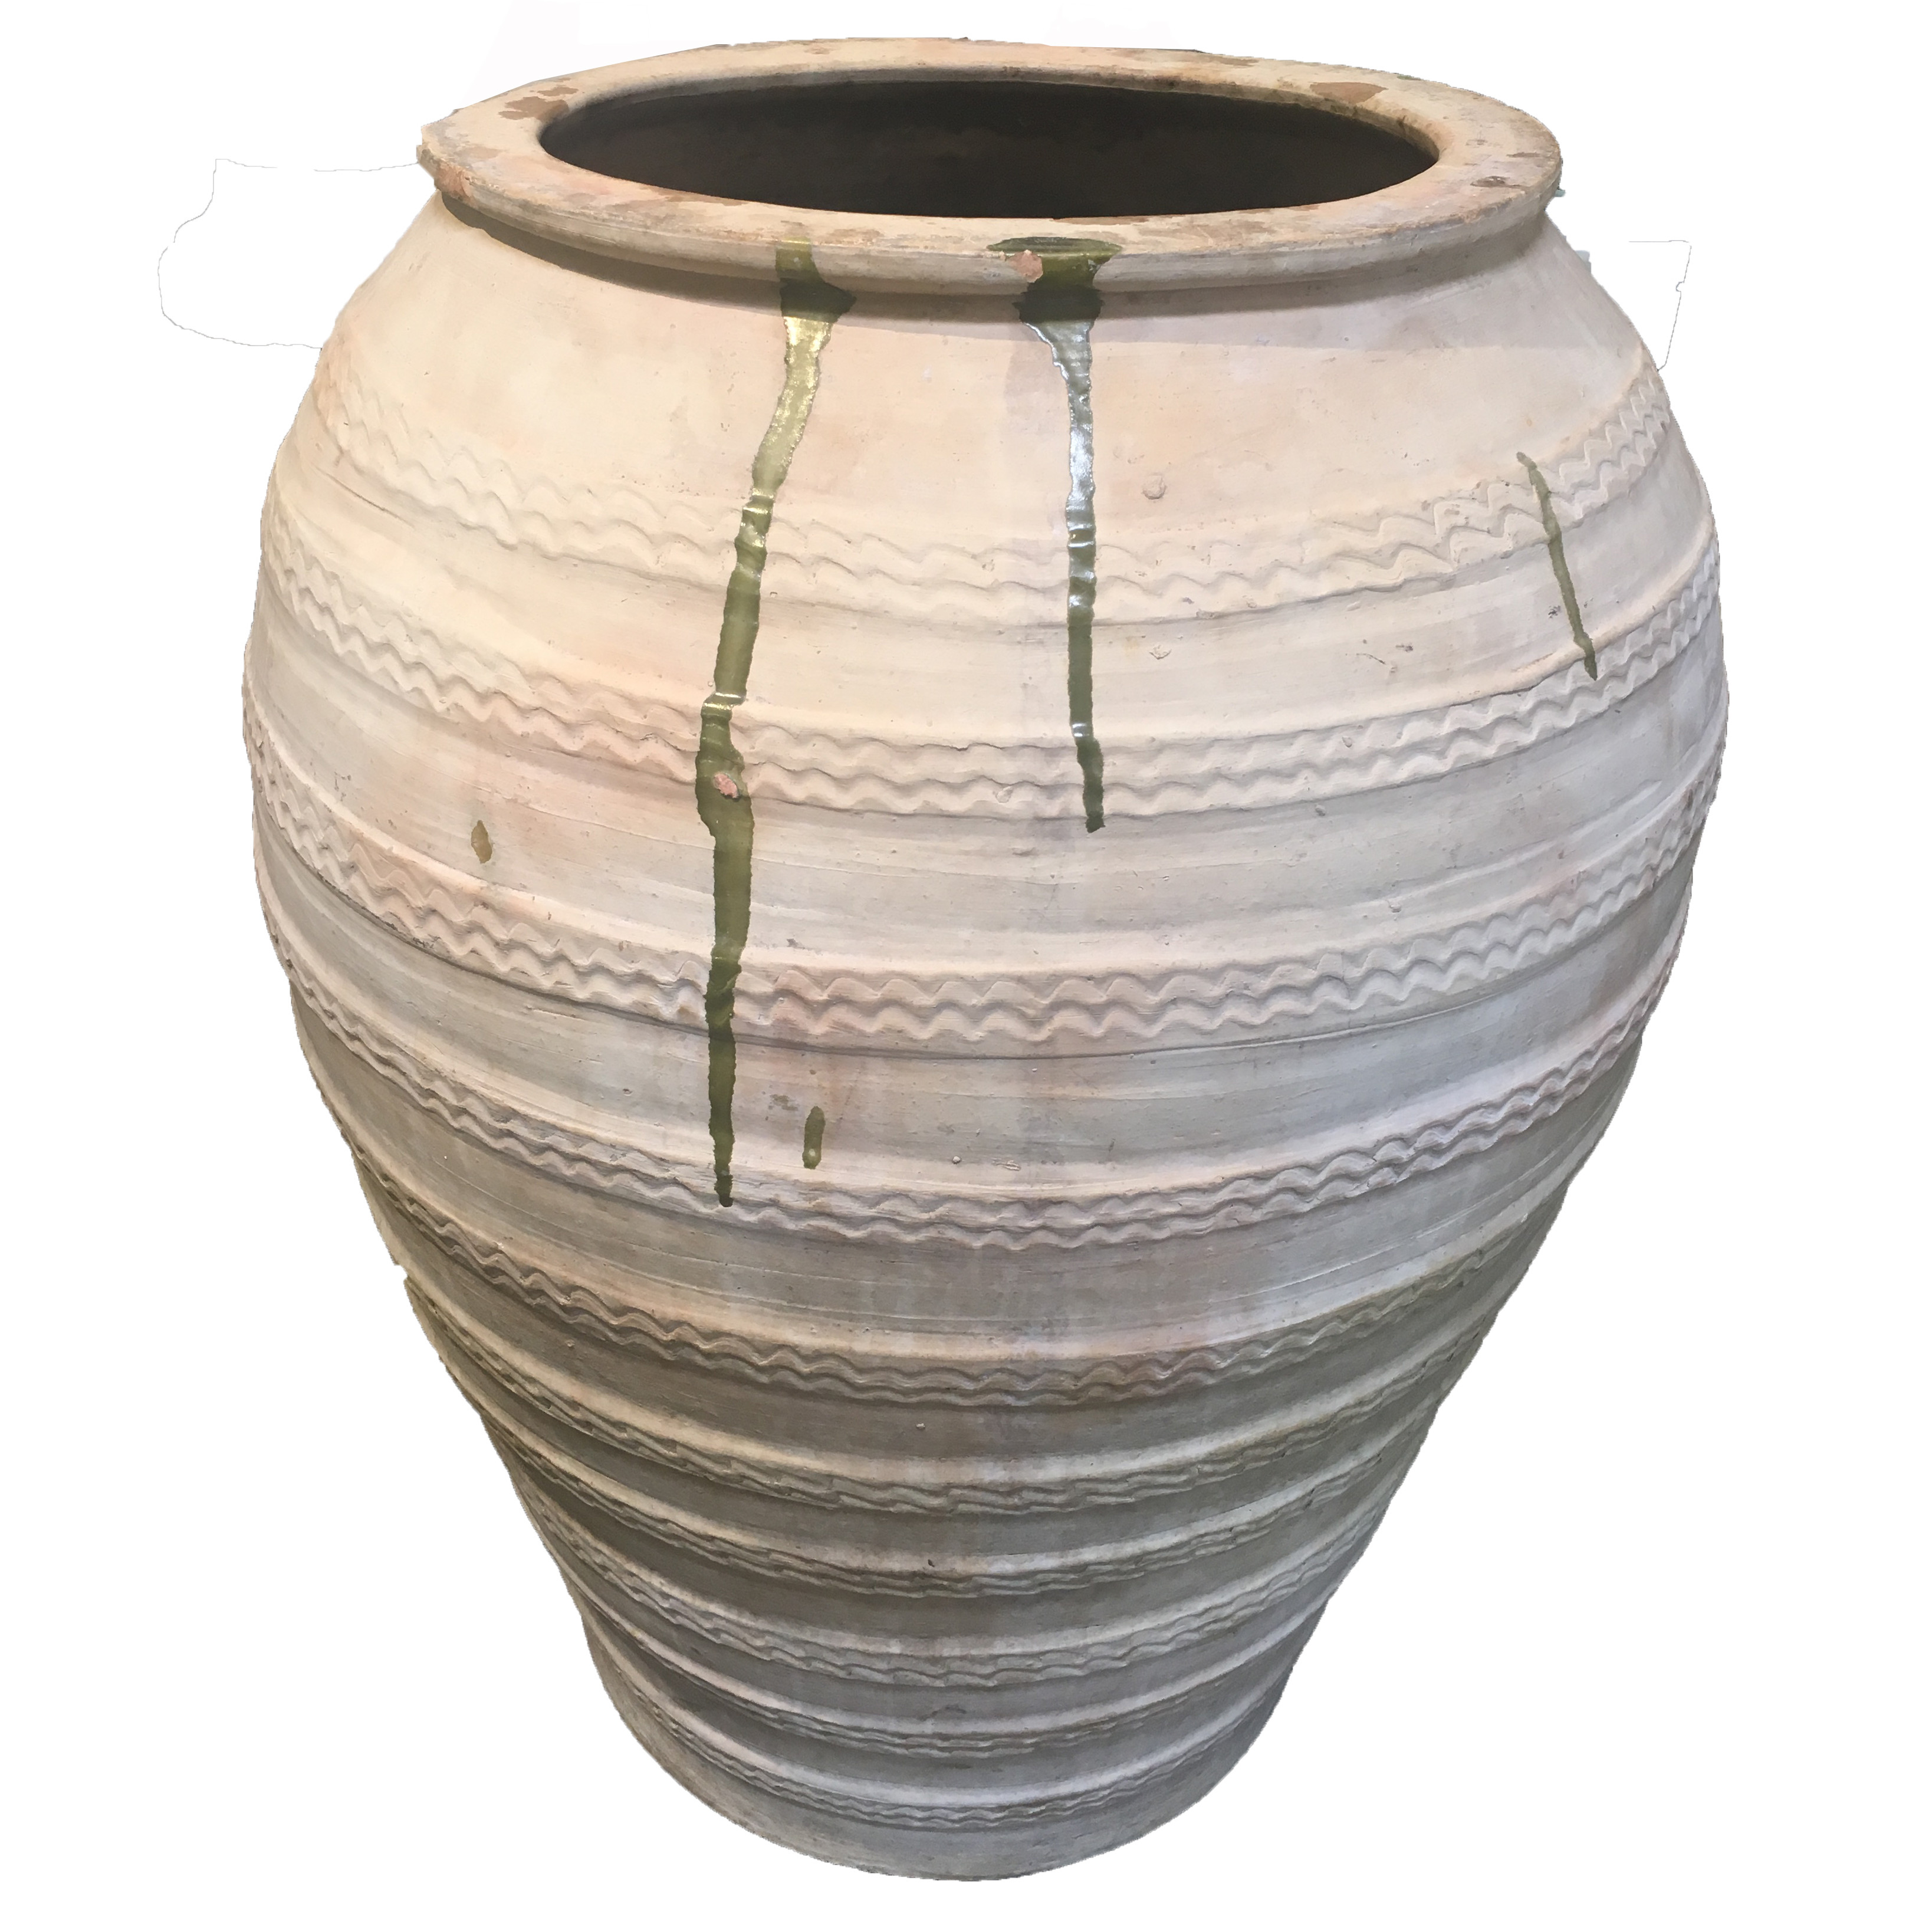 23 Elegant White Ceramic Urn Vase 2024 free download white ceramic urn vase of antique extra large spanish ceramic oil jar inner gardens intended for antique extra large spanish ceramic oil jar